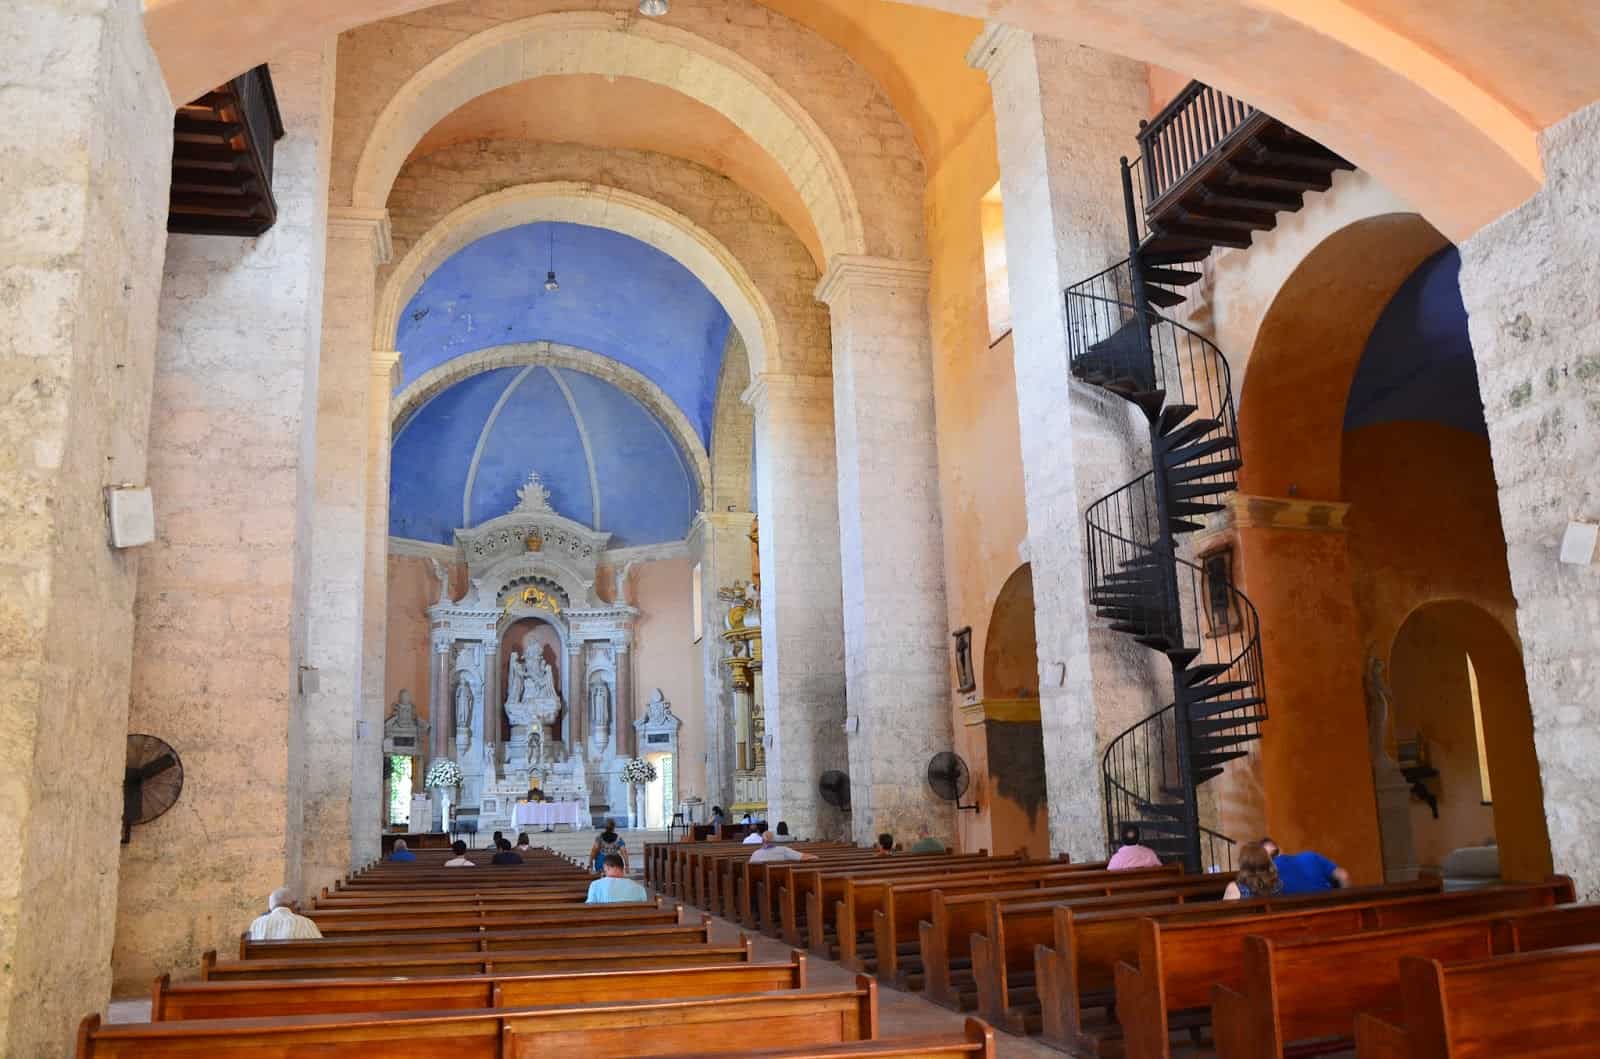 Church of Santo Domingo in El Centro, Cartagena, Bolívar, Colombia